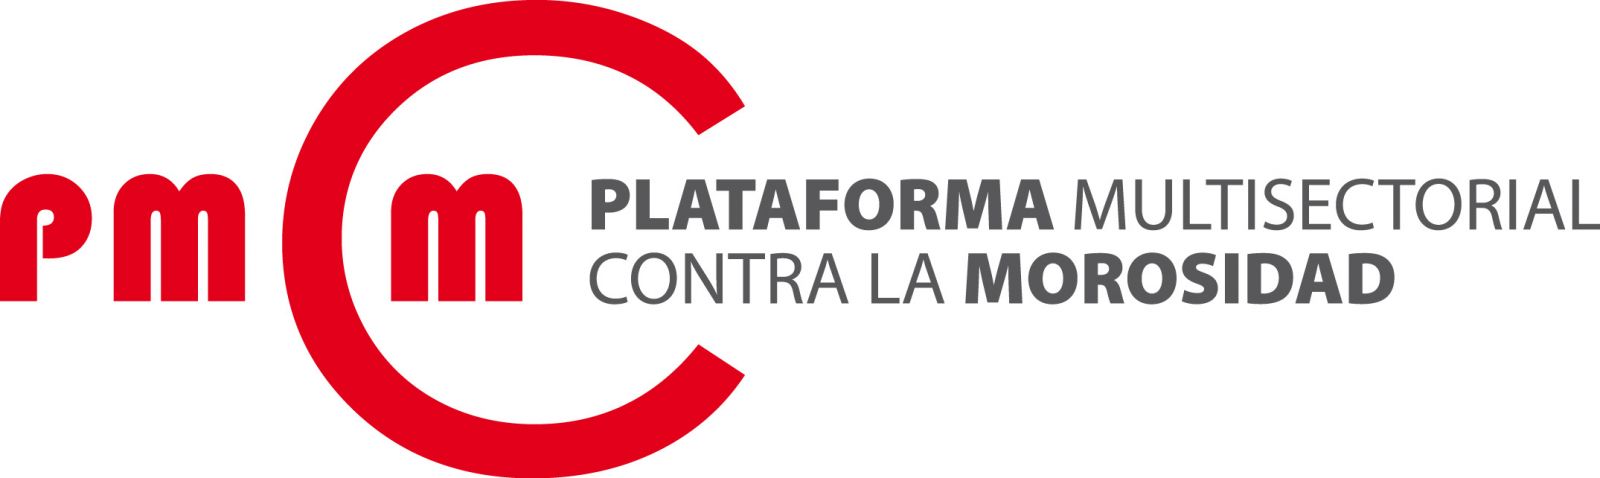 Plataforma Multisectorial contra la Morosidad (PMcM) Logo